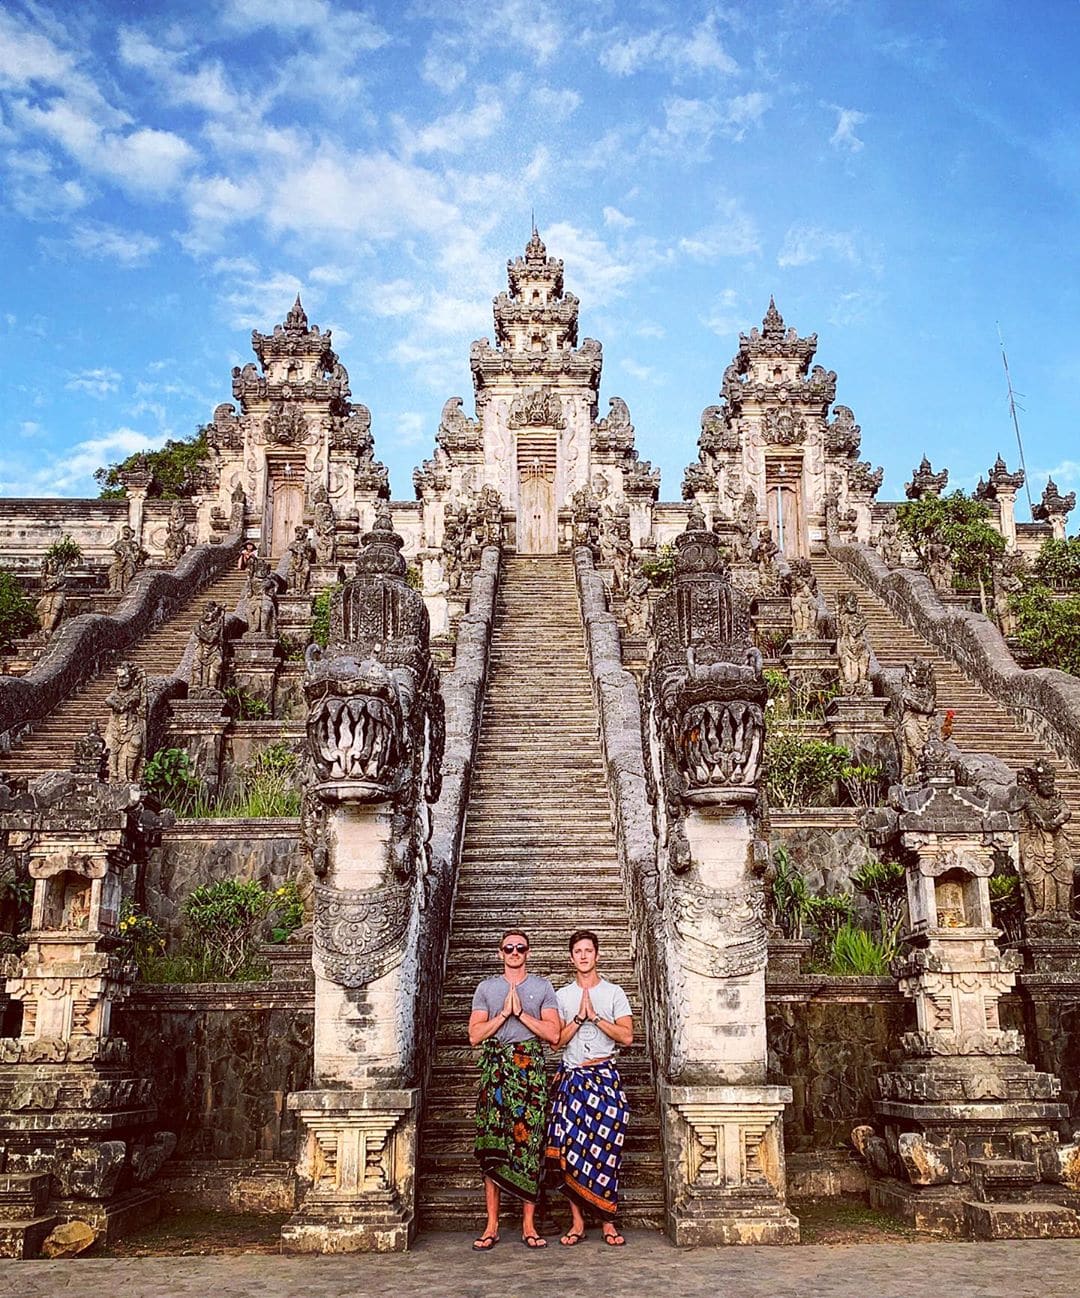 Люди без ума от фоток на фоне озера в храме на Бали. Оказалось, оно существует только в Инстаграме 46